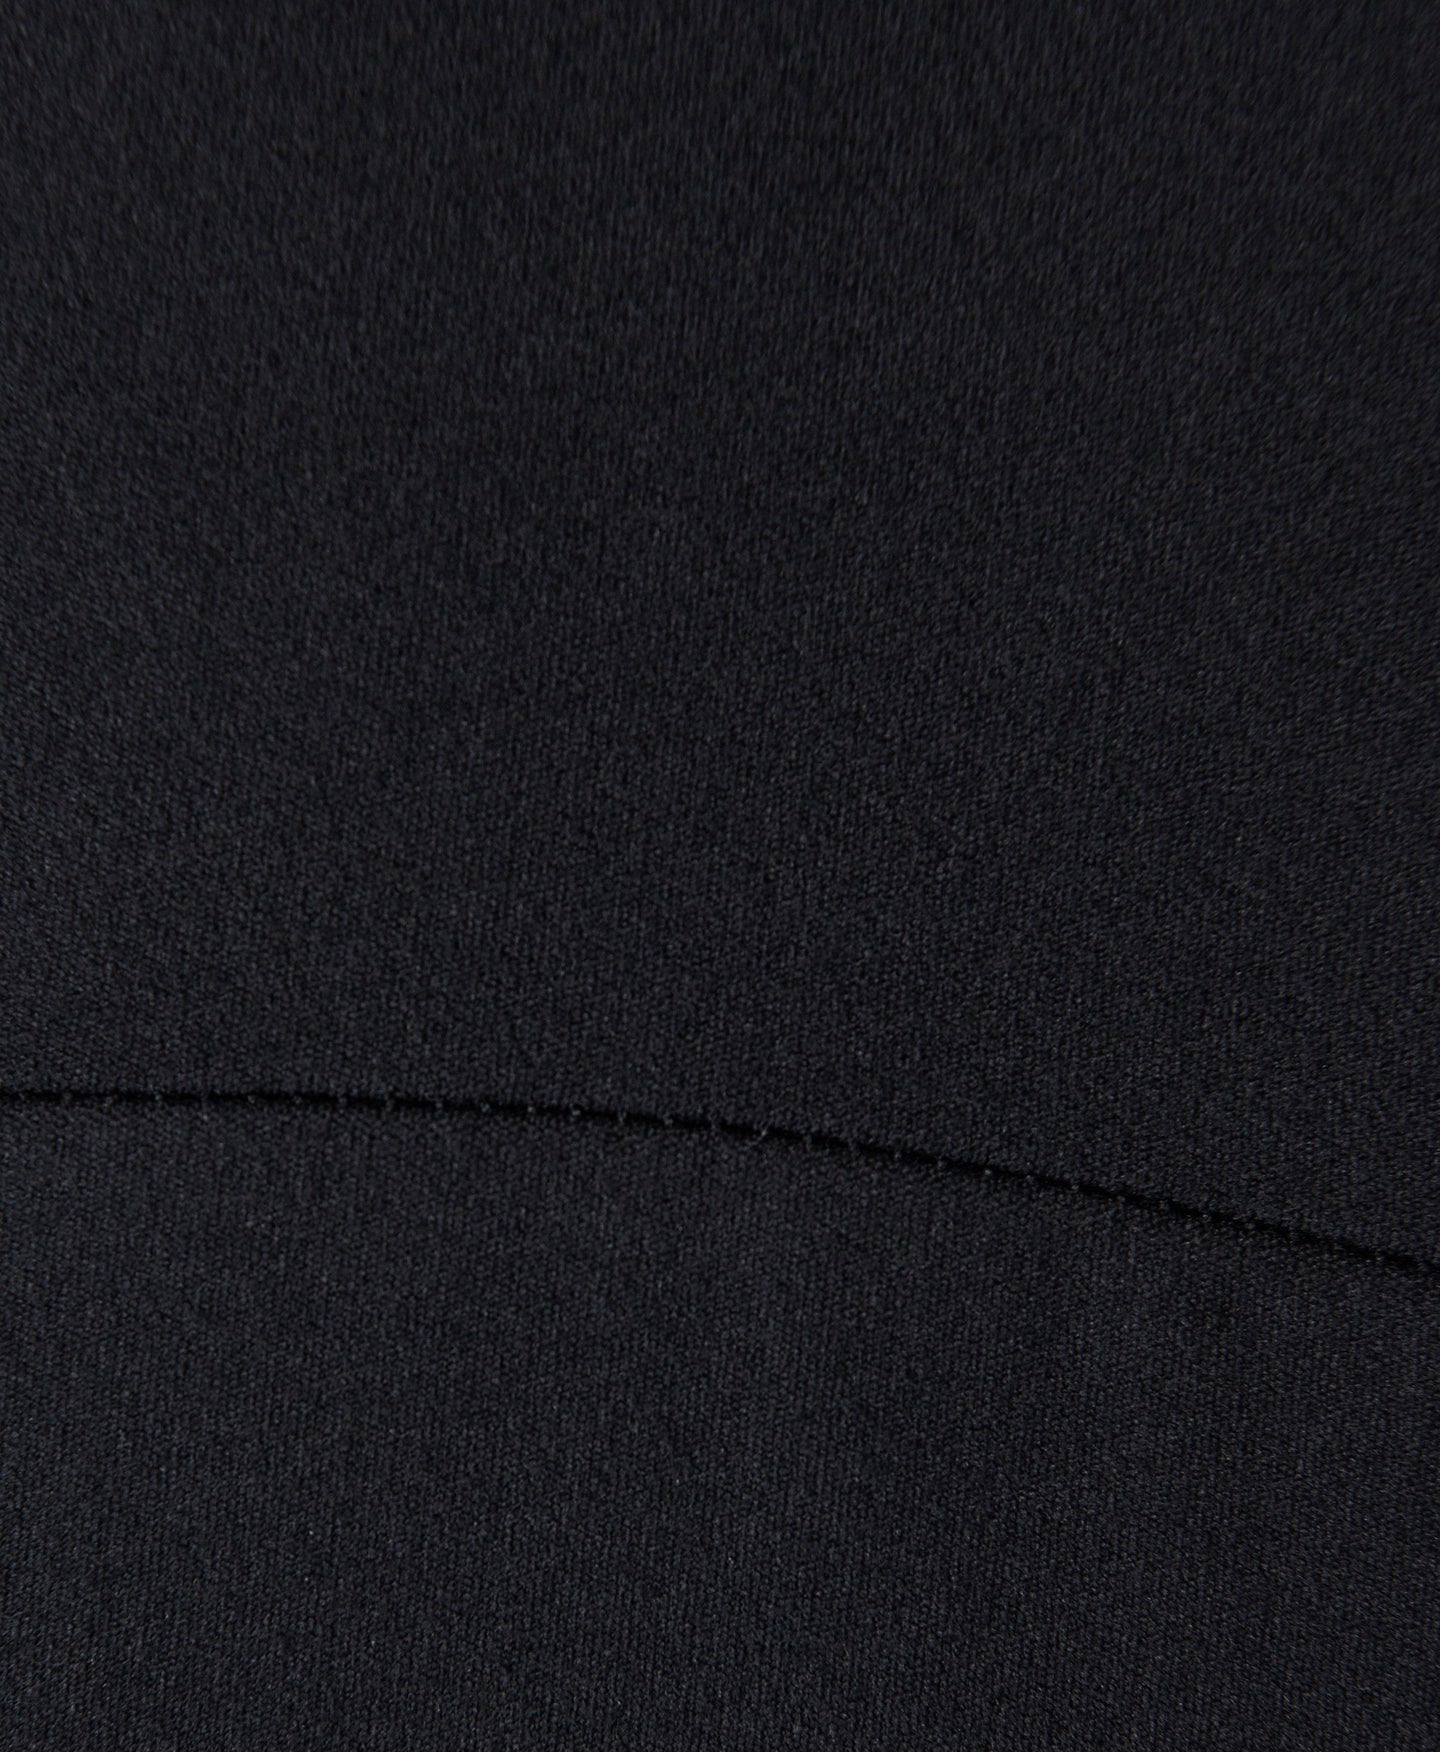 Super Soft Picot Lace Strappy Sb9340 Black